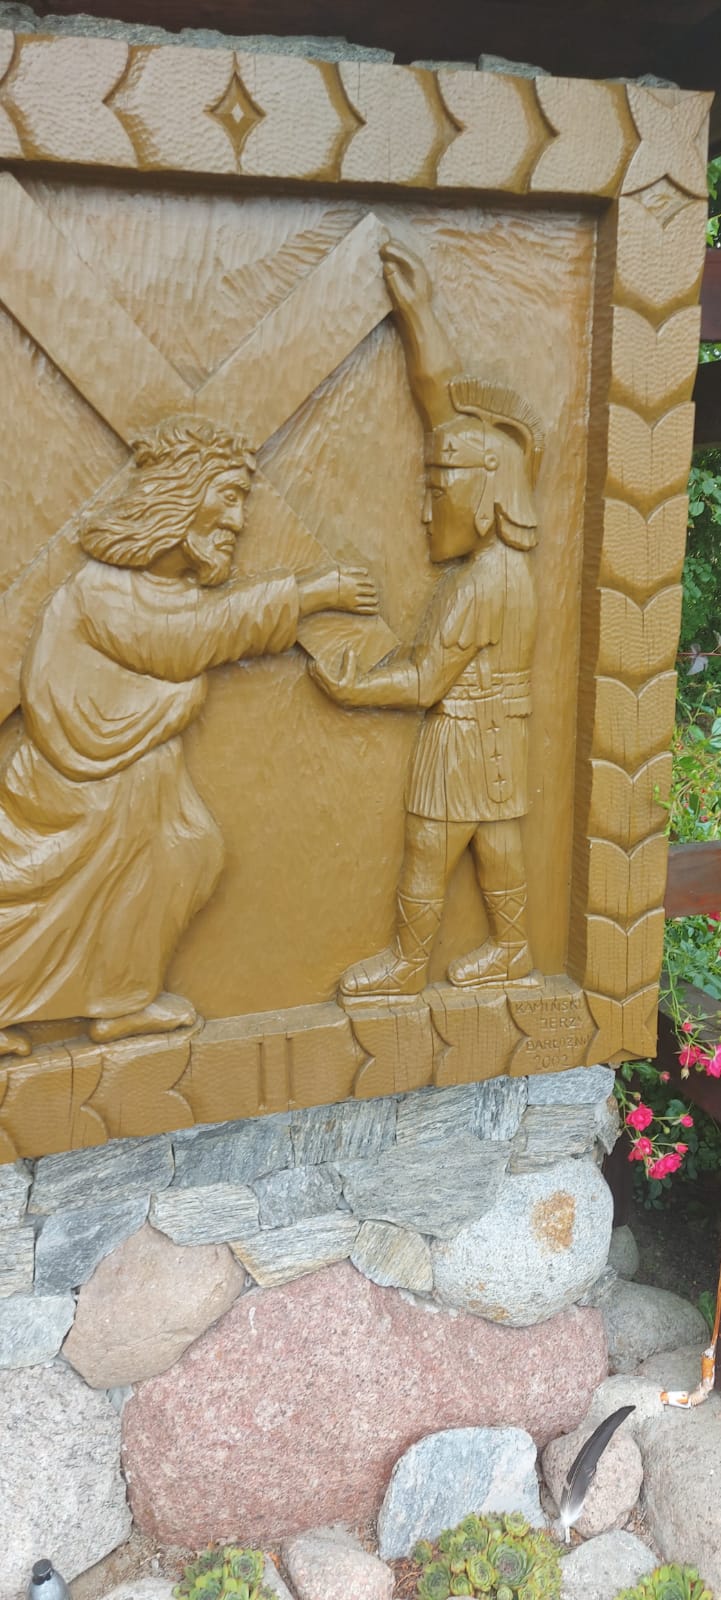 Drewniany obraz Jezusa niosącego krzyż oraz żołnierza przytrzymującego krzyż. Napis na obrazie "II". Autor Jerzy Kamieński Barłożno 2002.